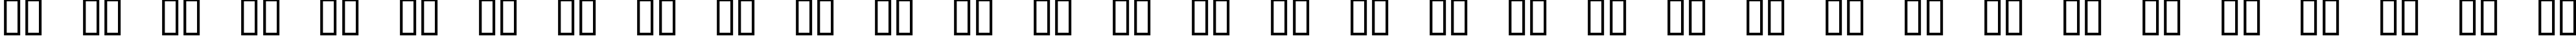 Пример написания русского алфавита шрифтом 04b_08